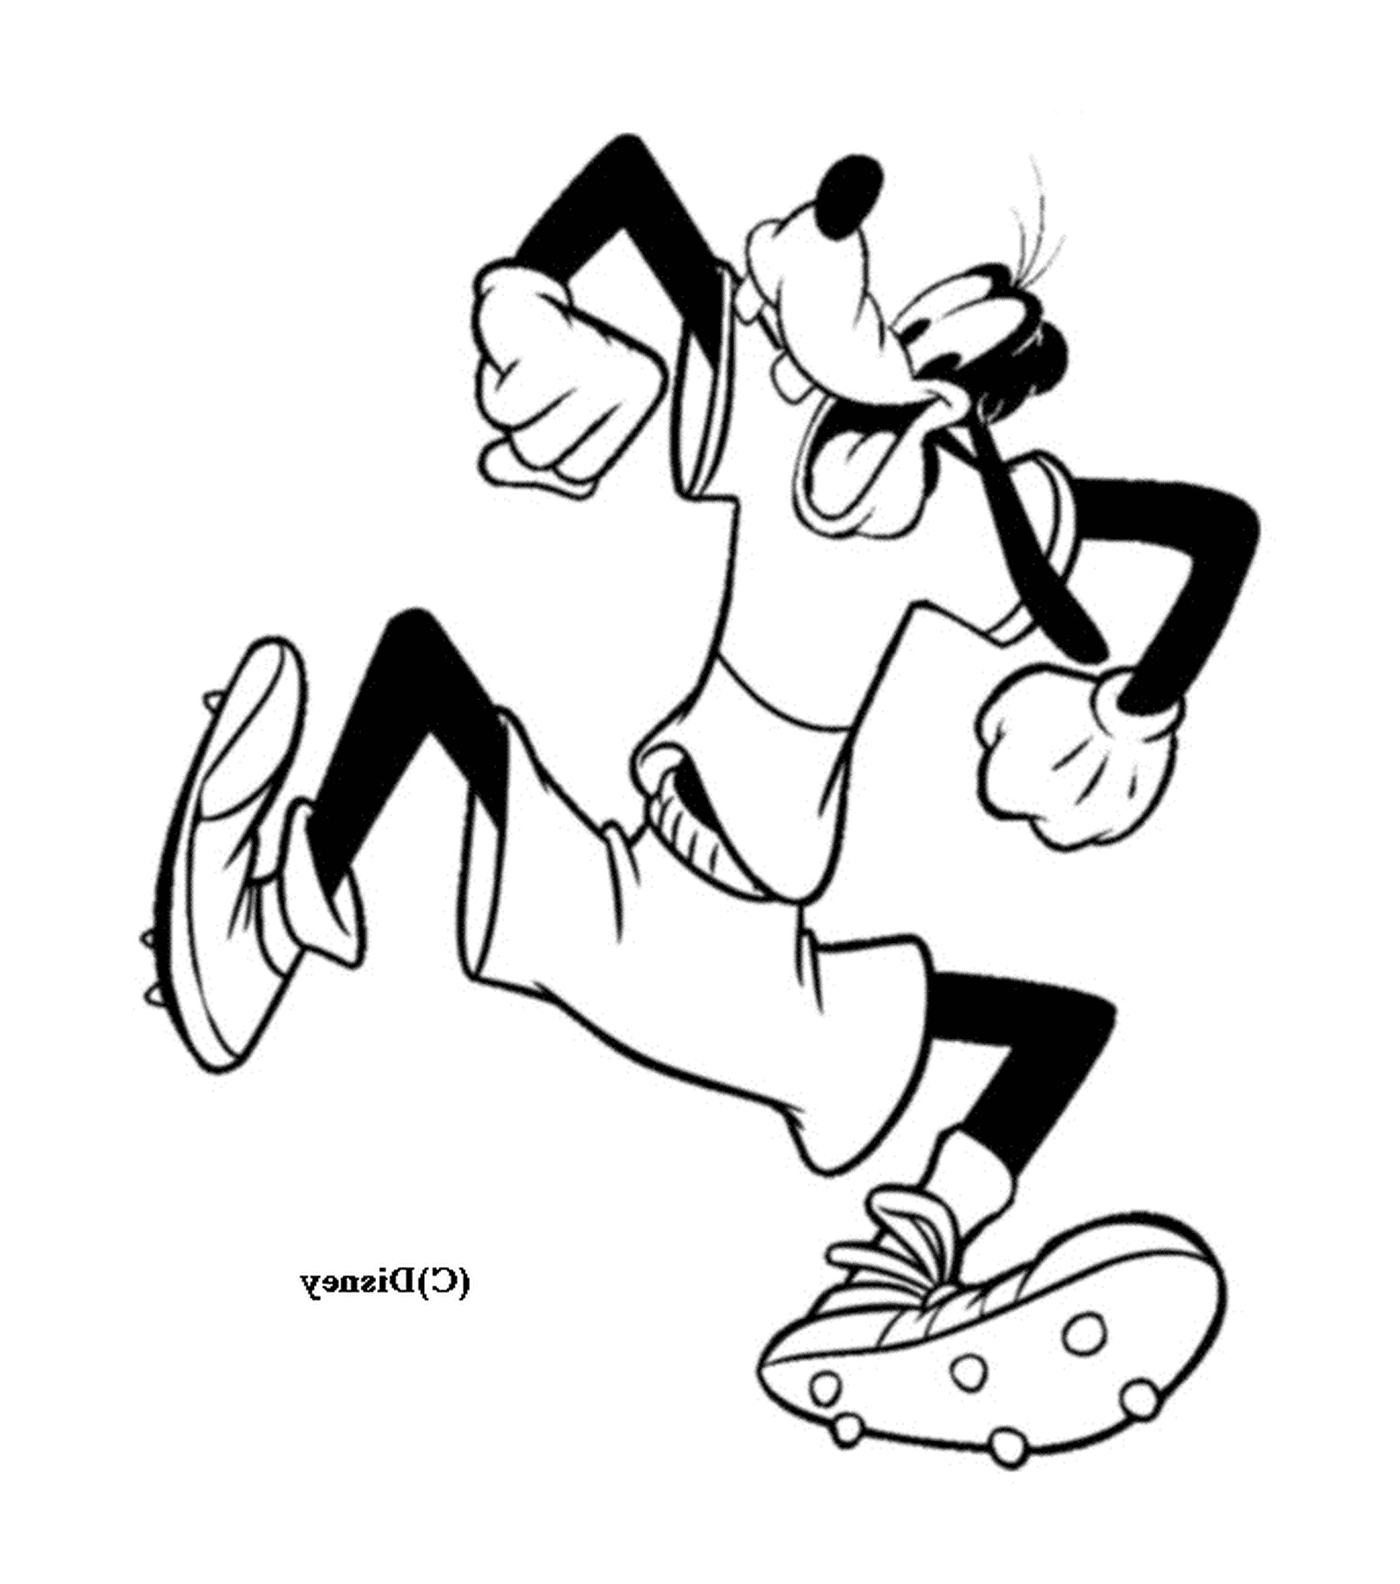  Dingo rennt durch das Tragen von Shorts 